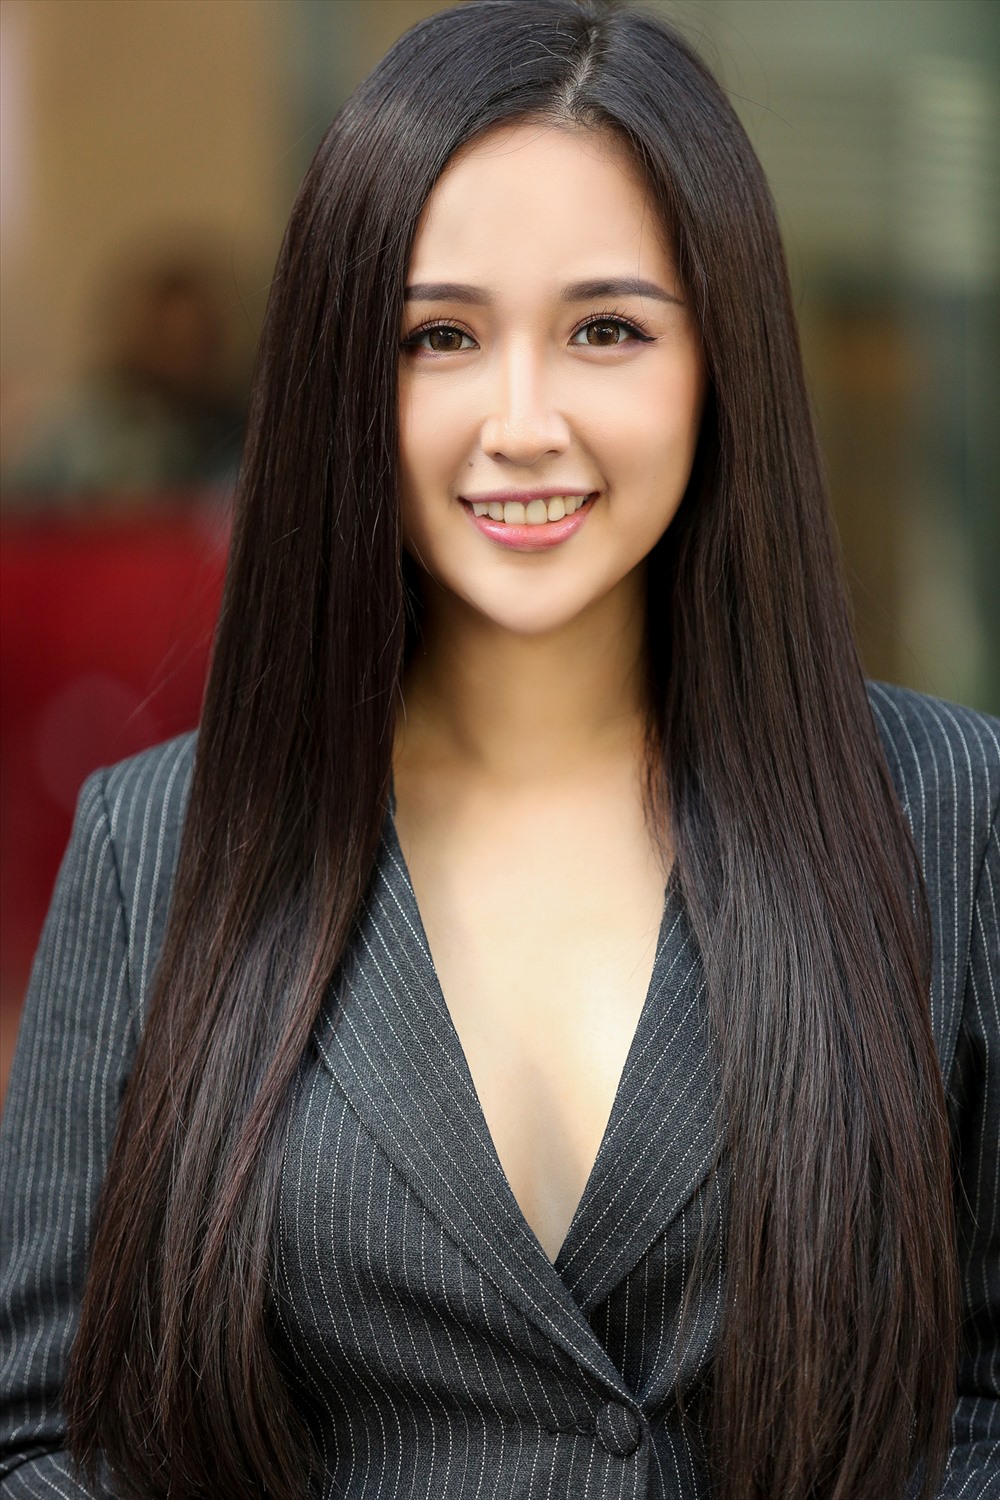 “Tiểu Vy là hoa hậu đẹp nhất trong mắt tôi“, Hoa hậu Mai Phương Thúy dành lời khen cho Hoa hậu Việt Nam 2018. Ảnh: MWVN.